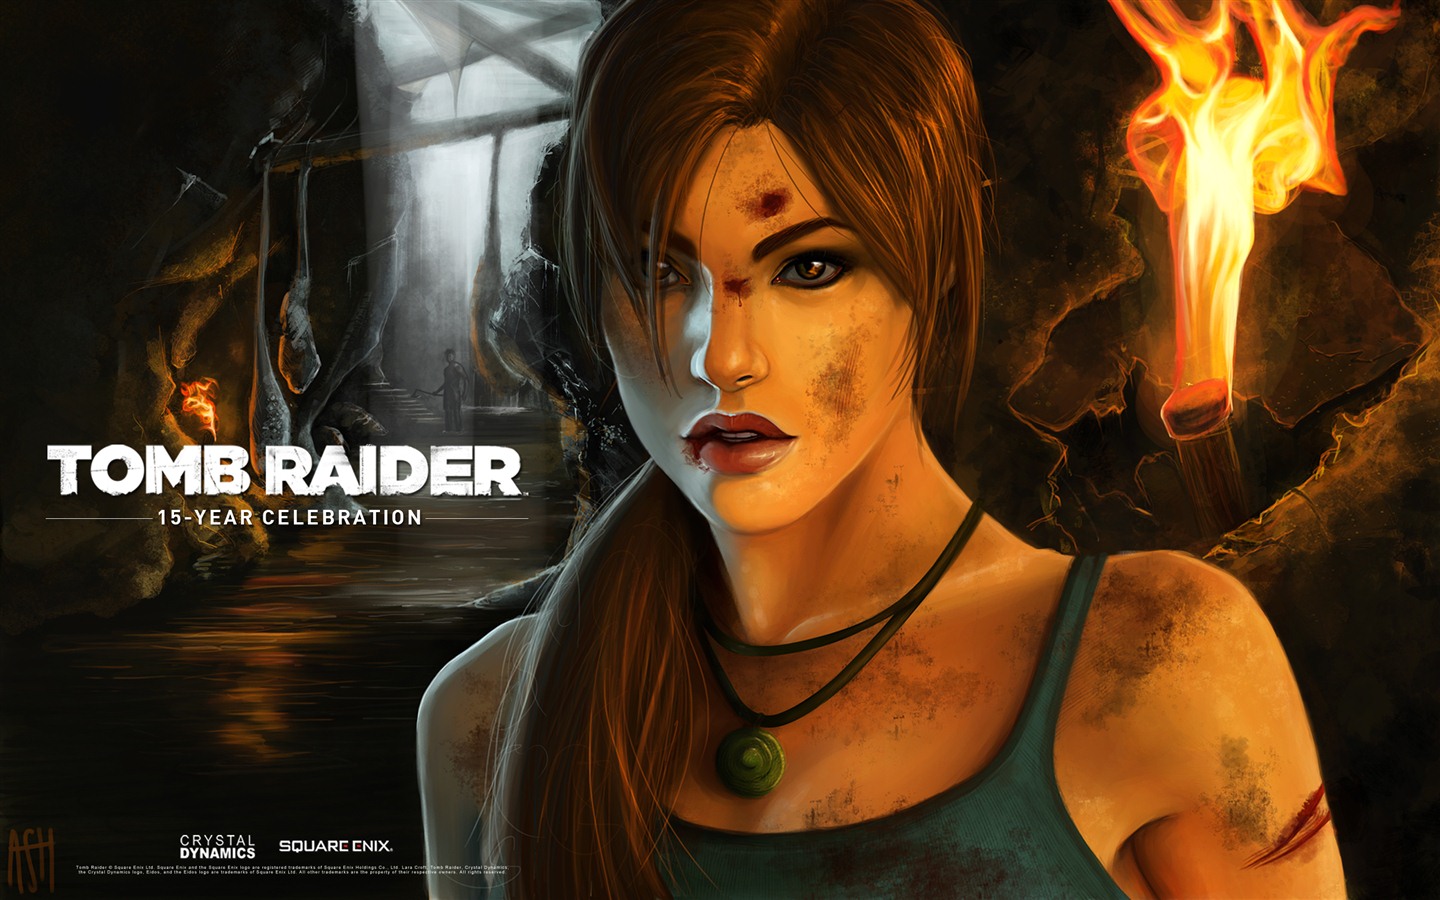 Tomb Raider 15-Year Celebration 古墓丽影15周年纪念版 高清壁纸7 - 1440x900